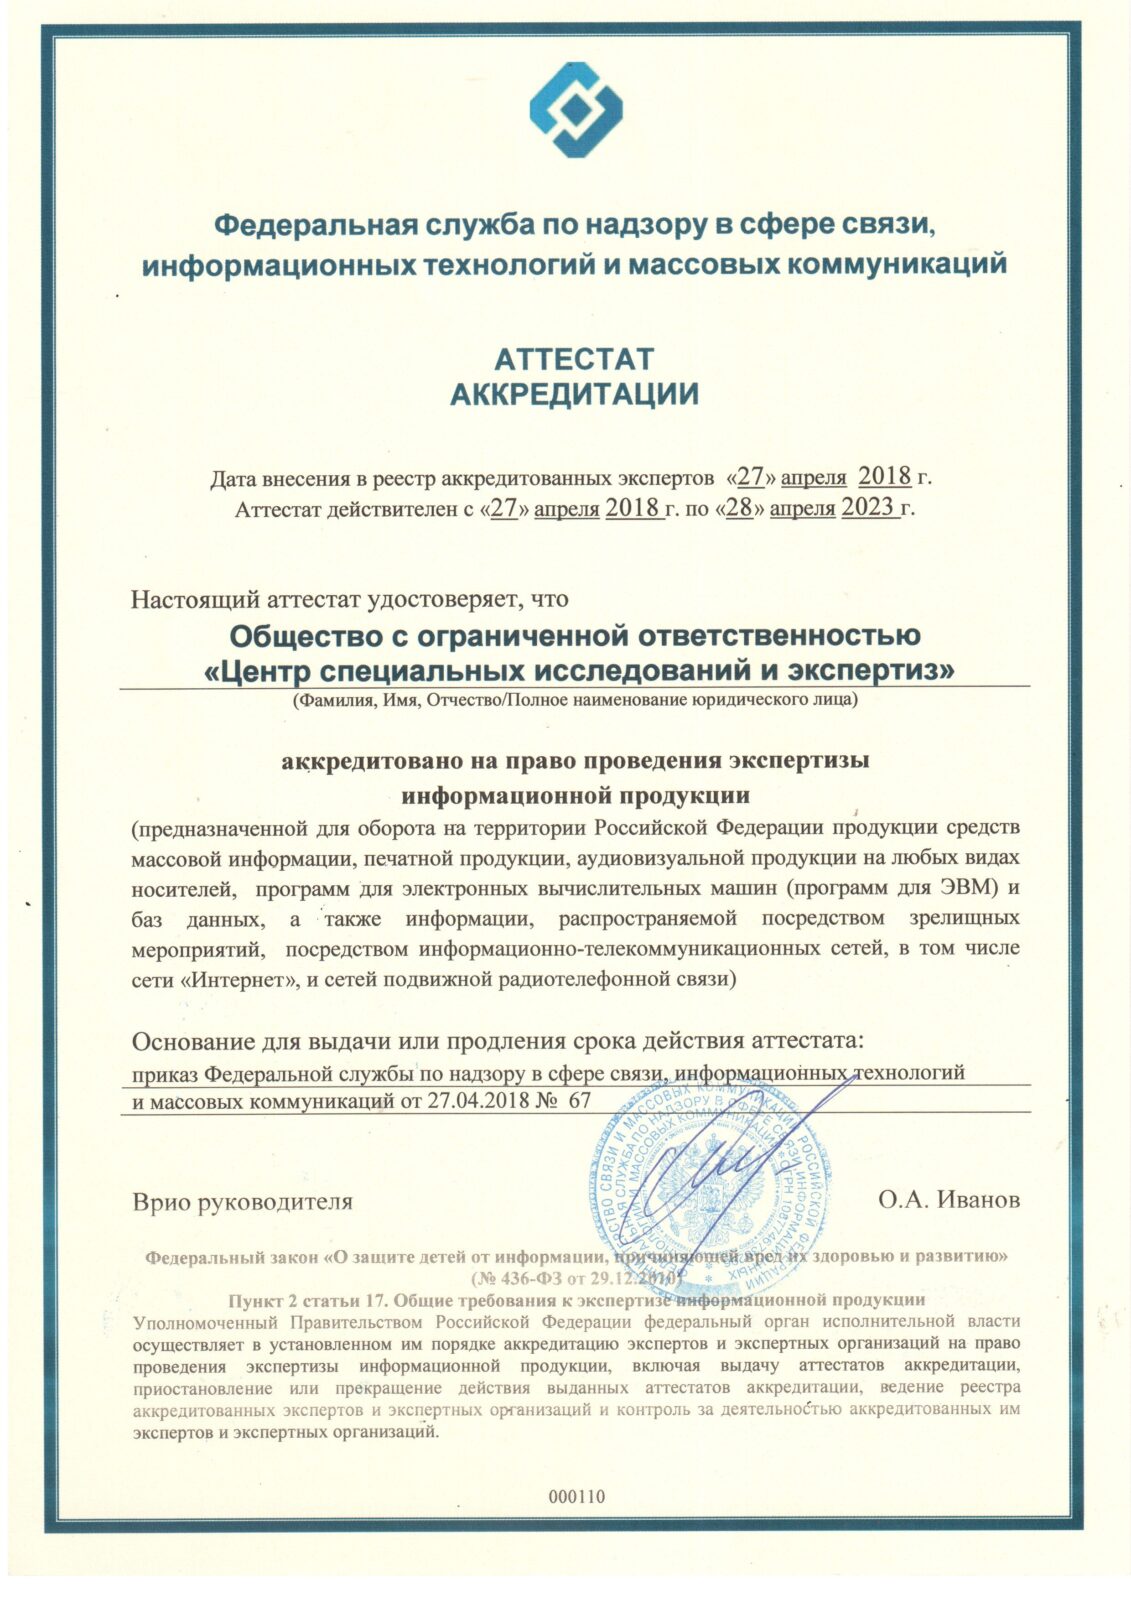 аттестат аккредитации Роскомнадзора на право производства экспертизы информационной продукции для детей